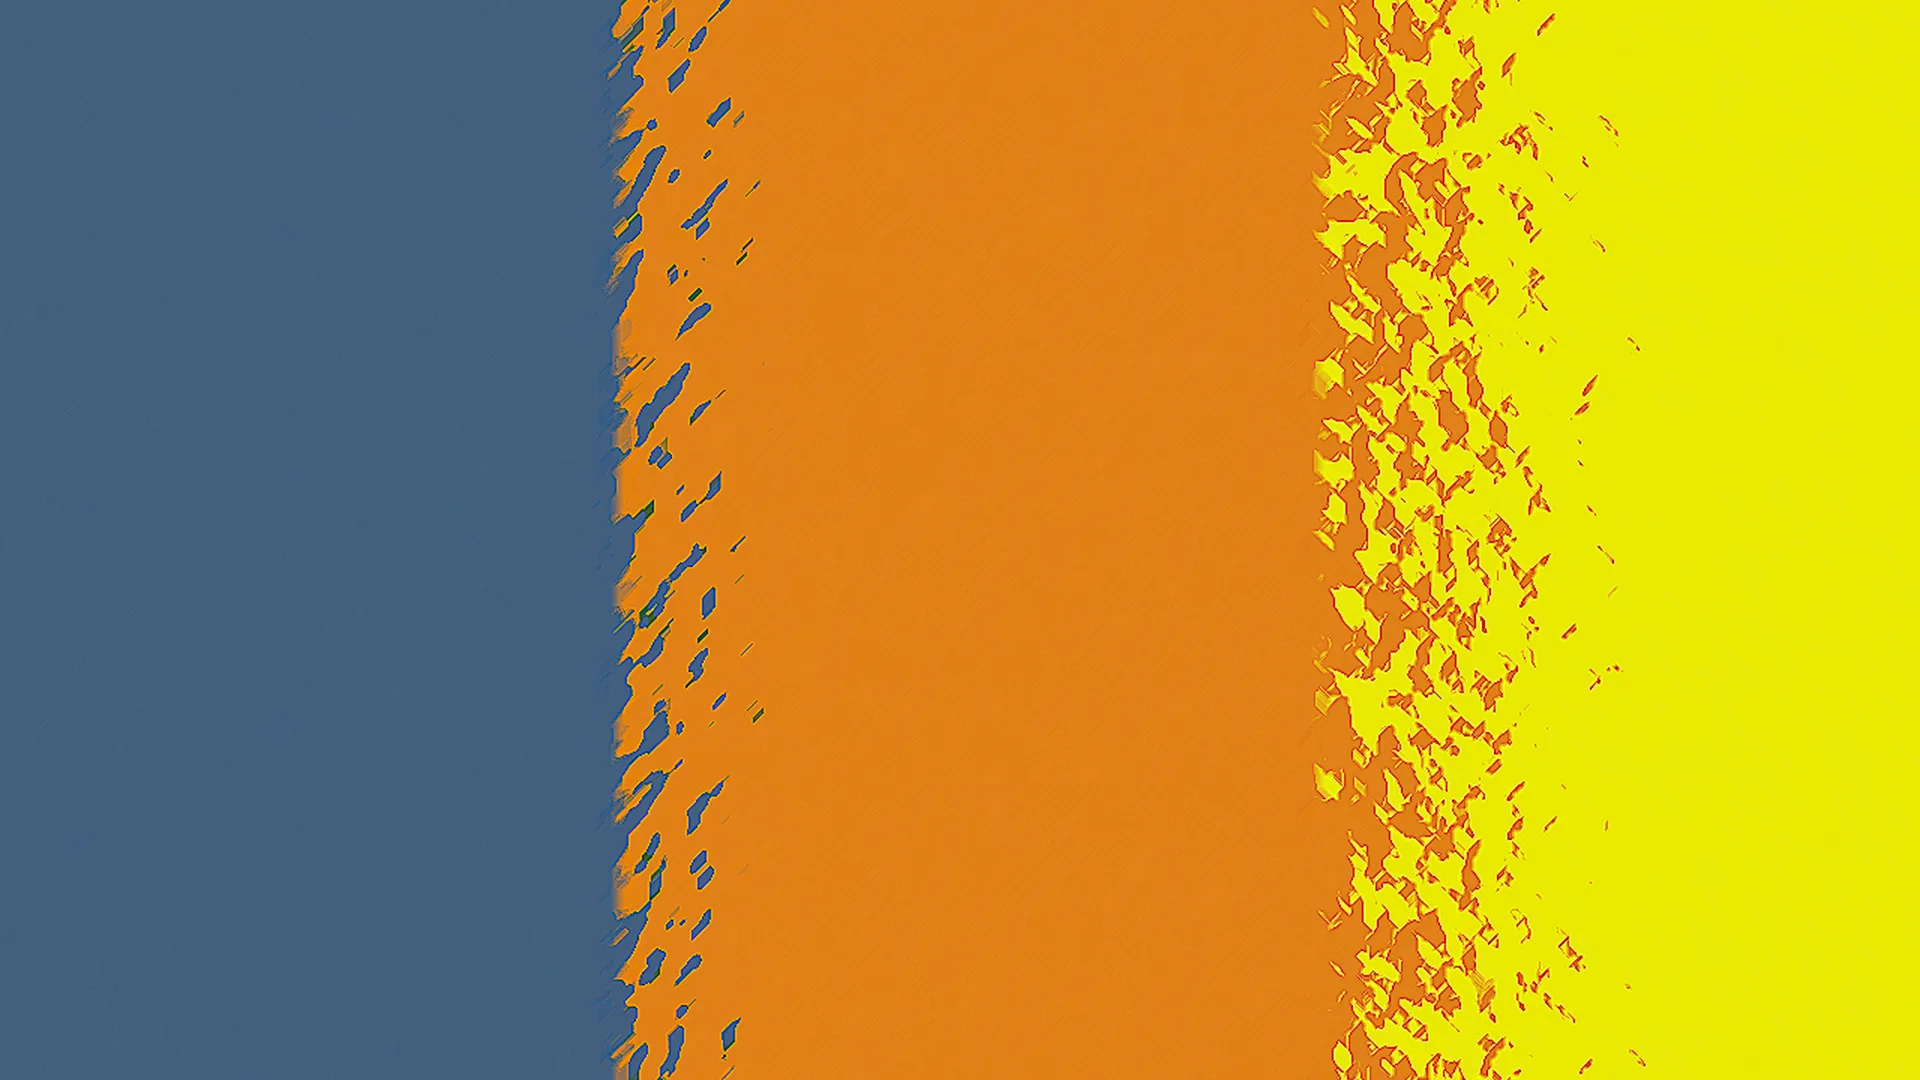 Dark blue, orange and yellow